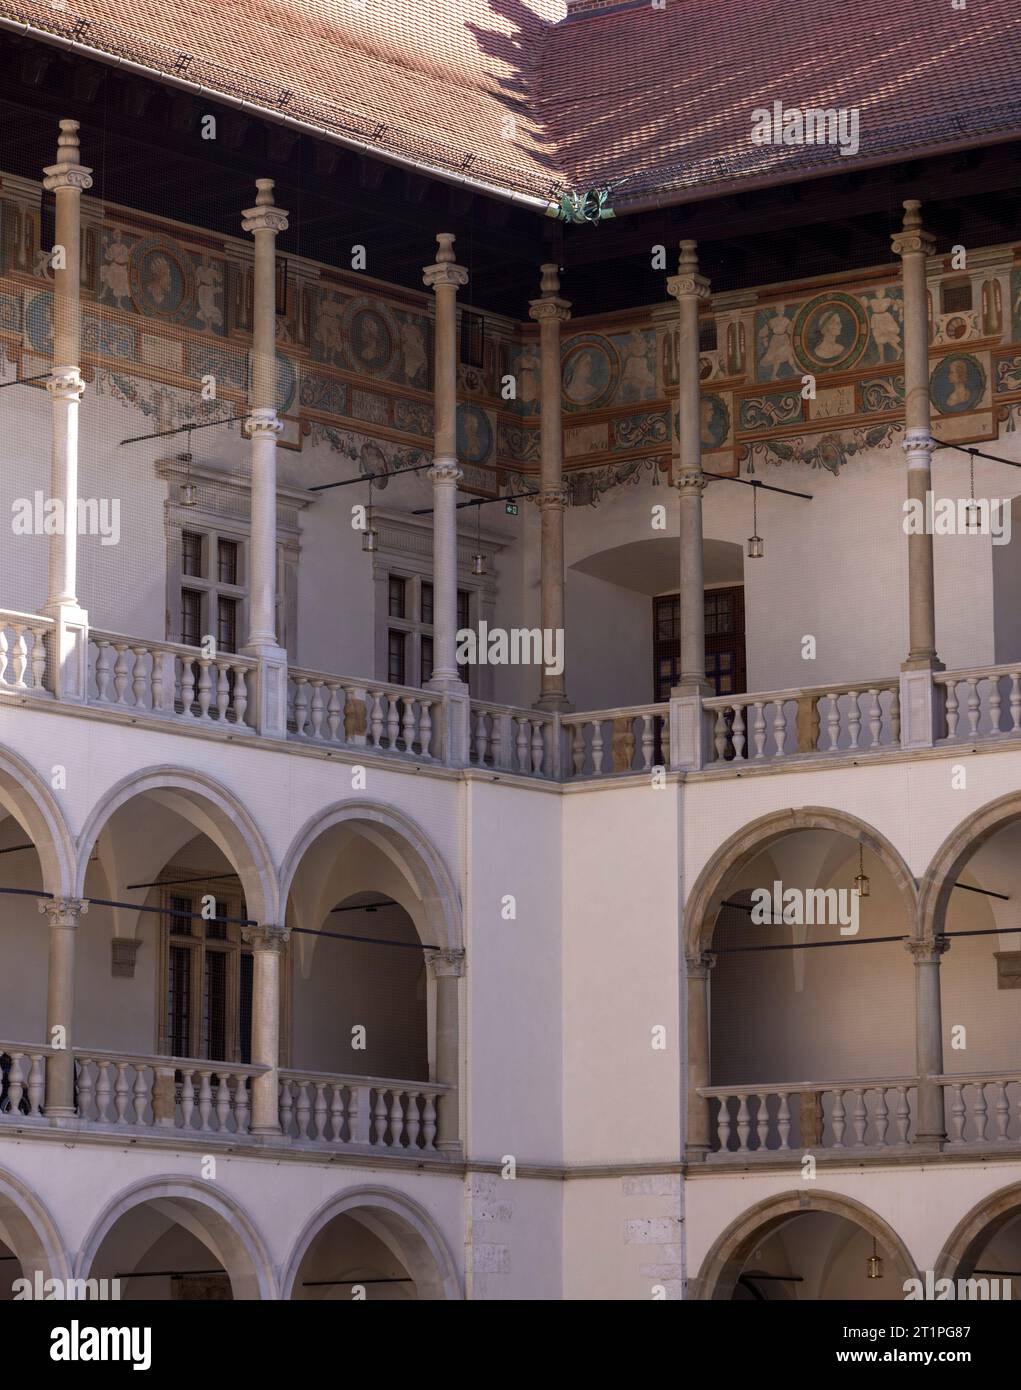 Les arcades étagées de Sigismond I l'ancien dans la cour de la Renaissance italienne dans le château de Wawel, Cracovie, Pologne Banque D'Images